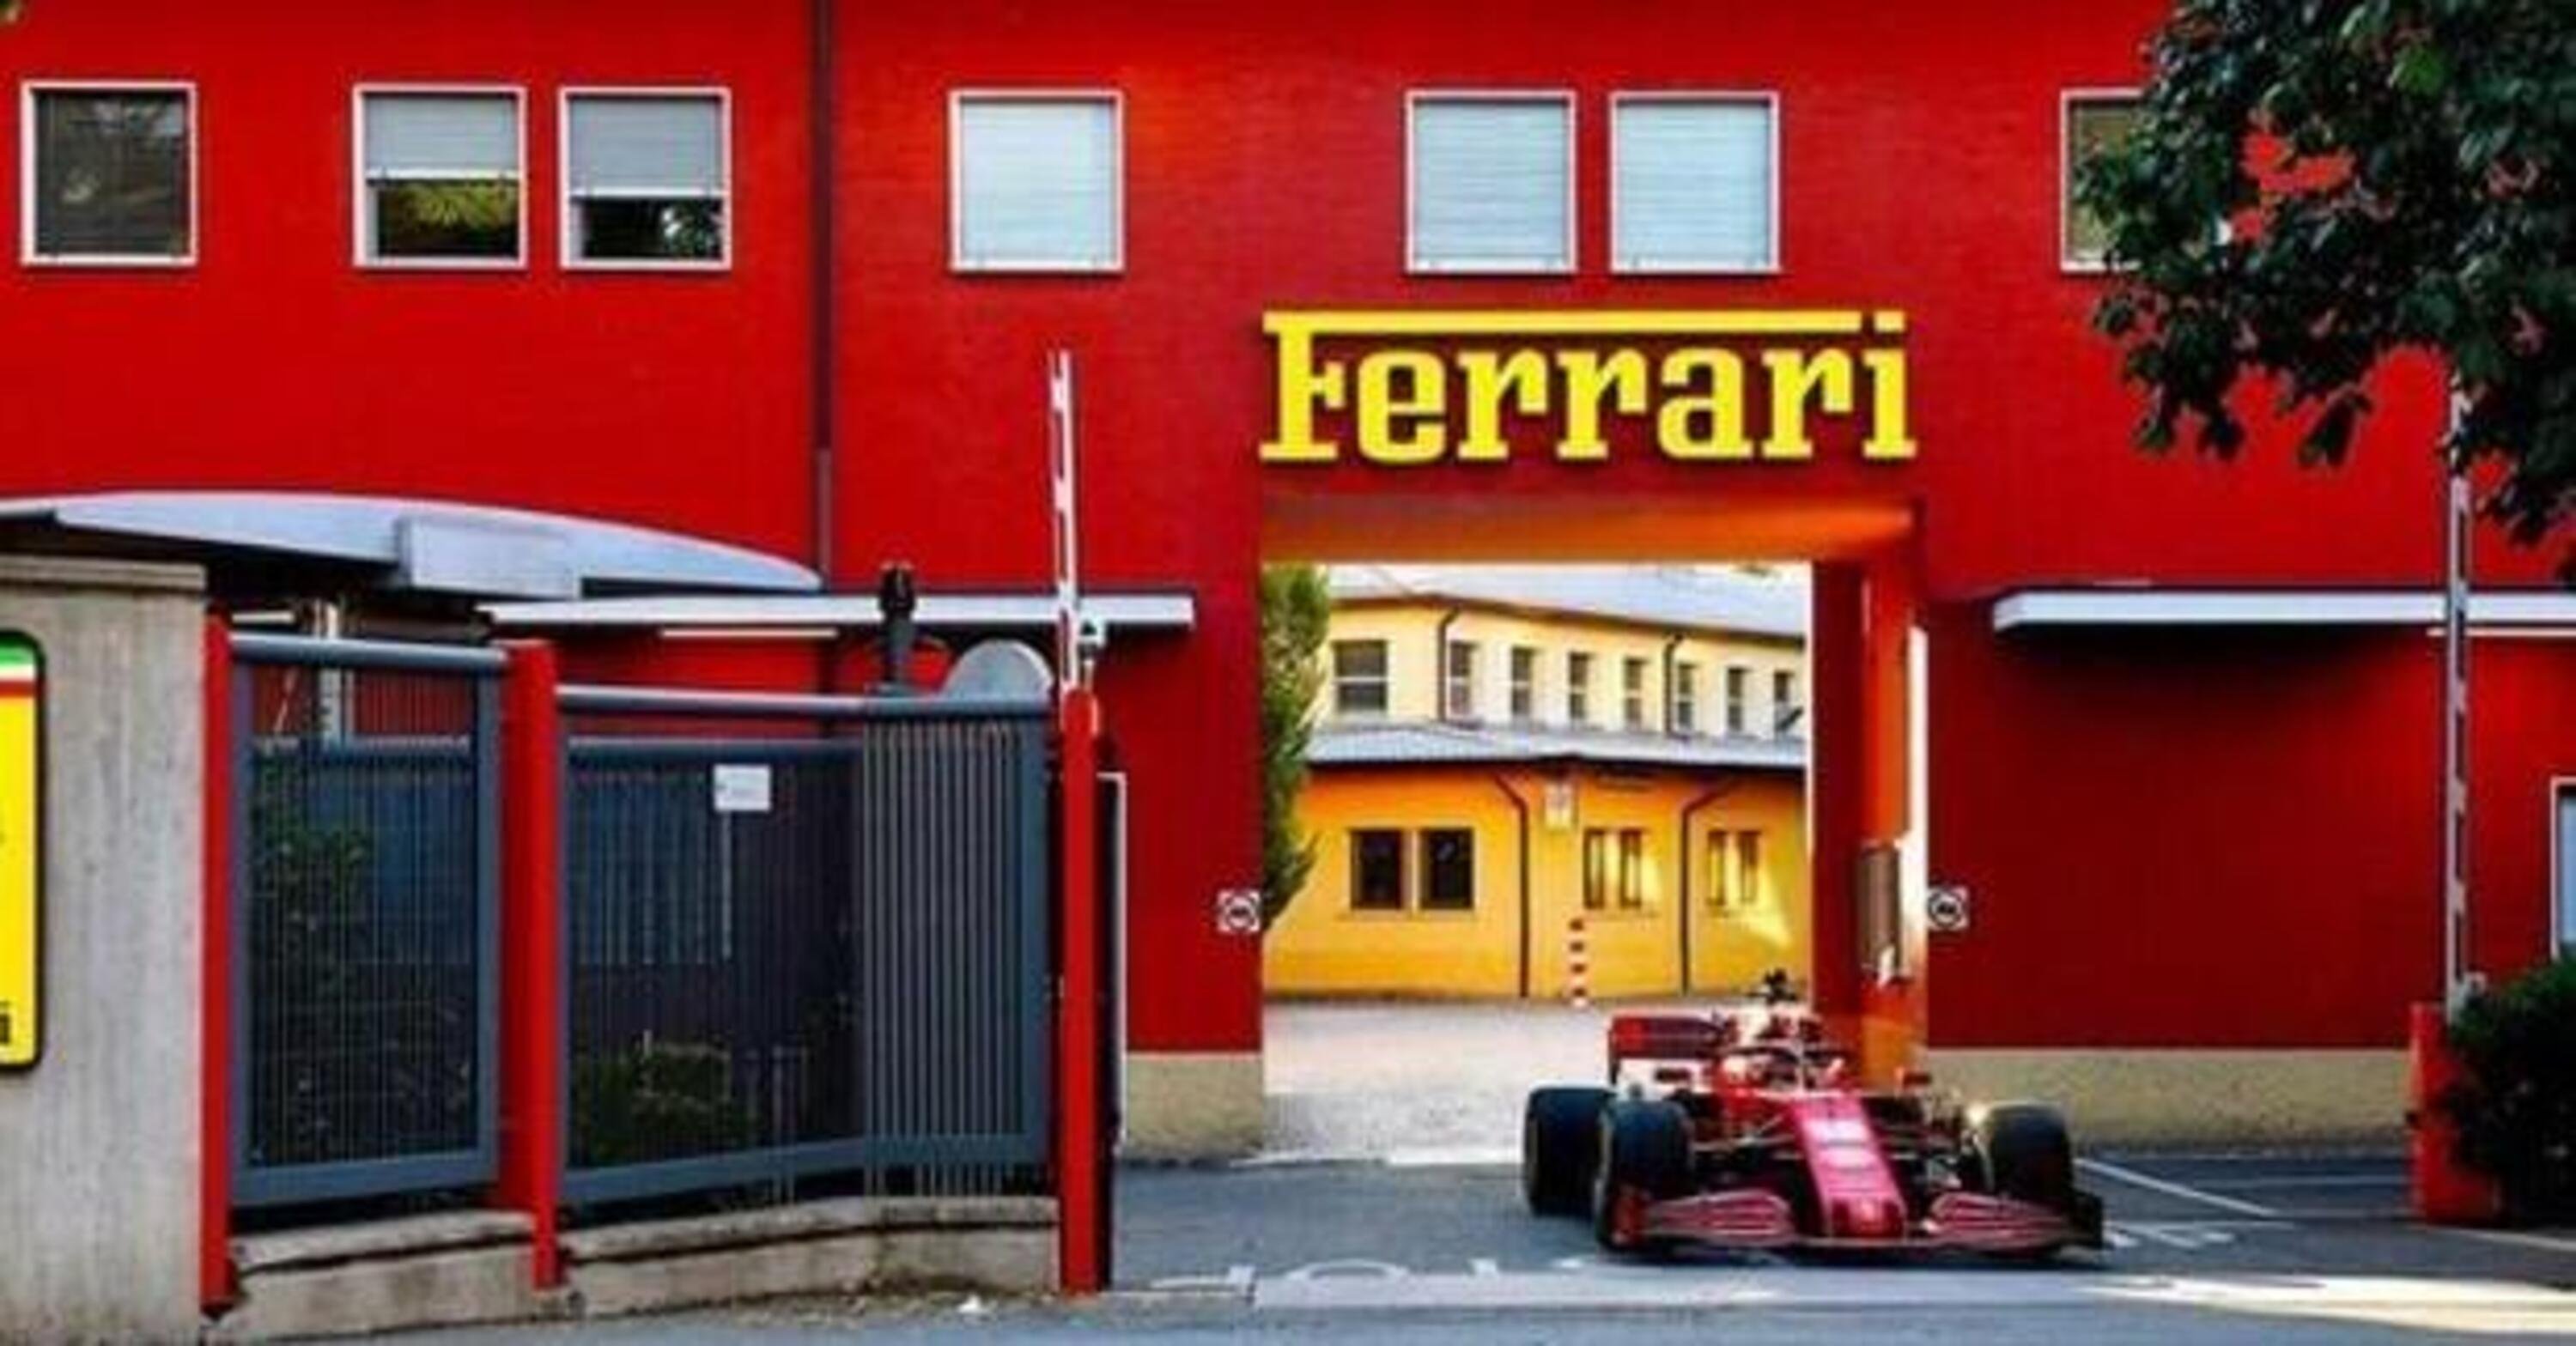 Ferrari al top nei bilanci e pronta con Purosangue: lancio a settembre e vendite nel 2023 (400mila &euro;)